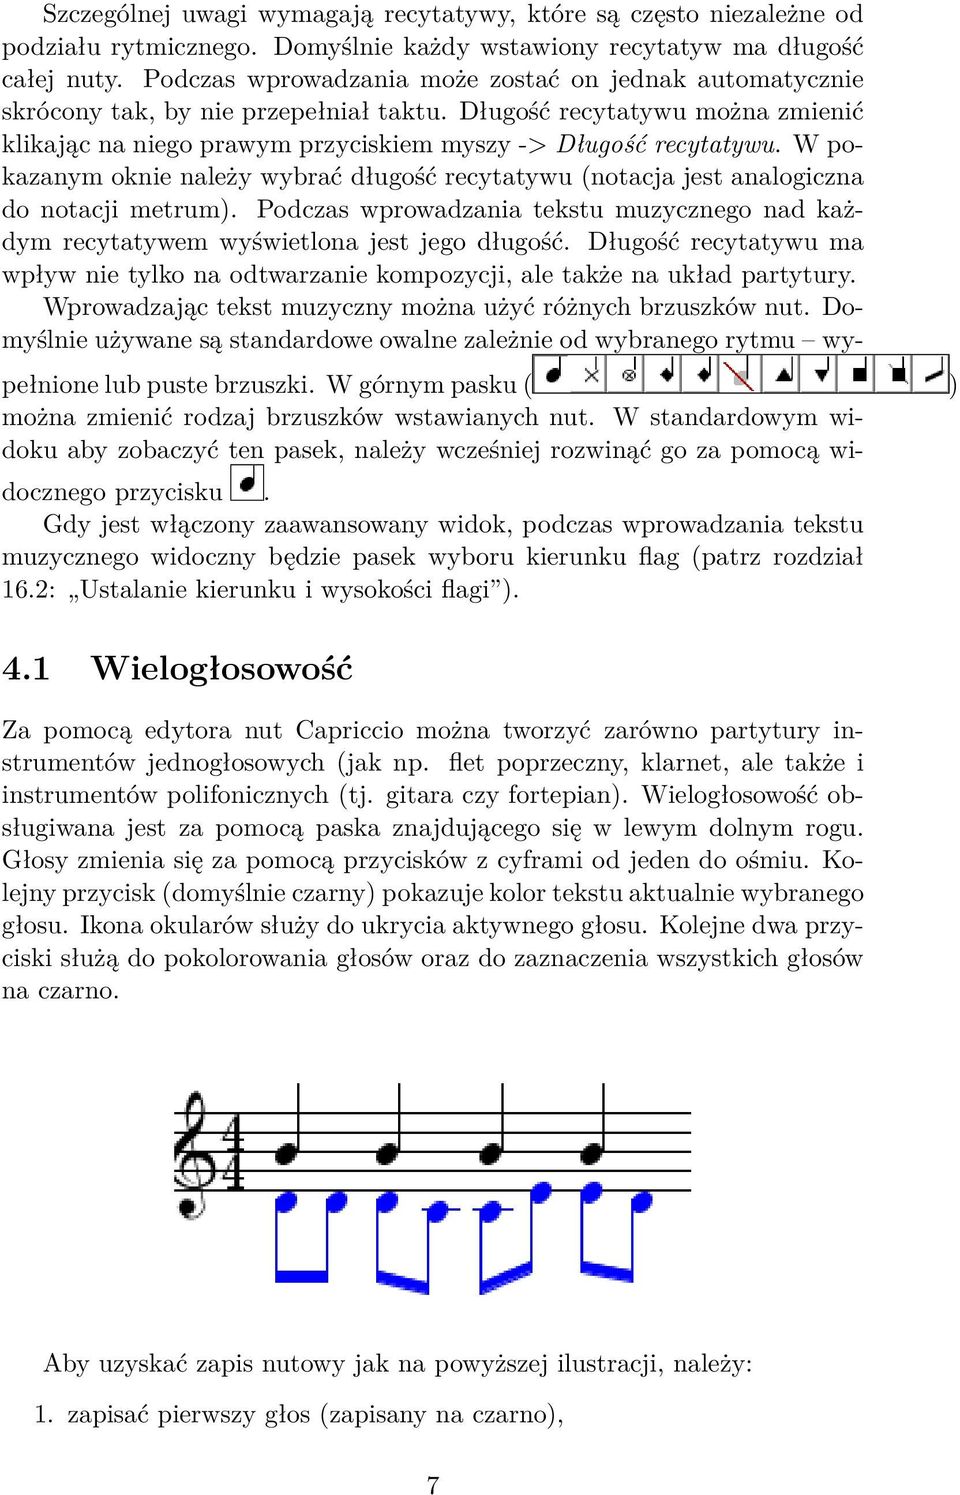 W pokazanym oknie należy wybrać długość recytatywu (notacja jest analogiczna do notacji metrum). Podczas wprowadzania tekstu muzycznego nad każdym recytatywem wyświetlona jest jego długość.